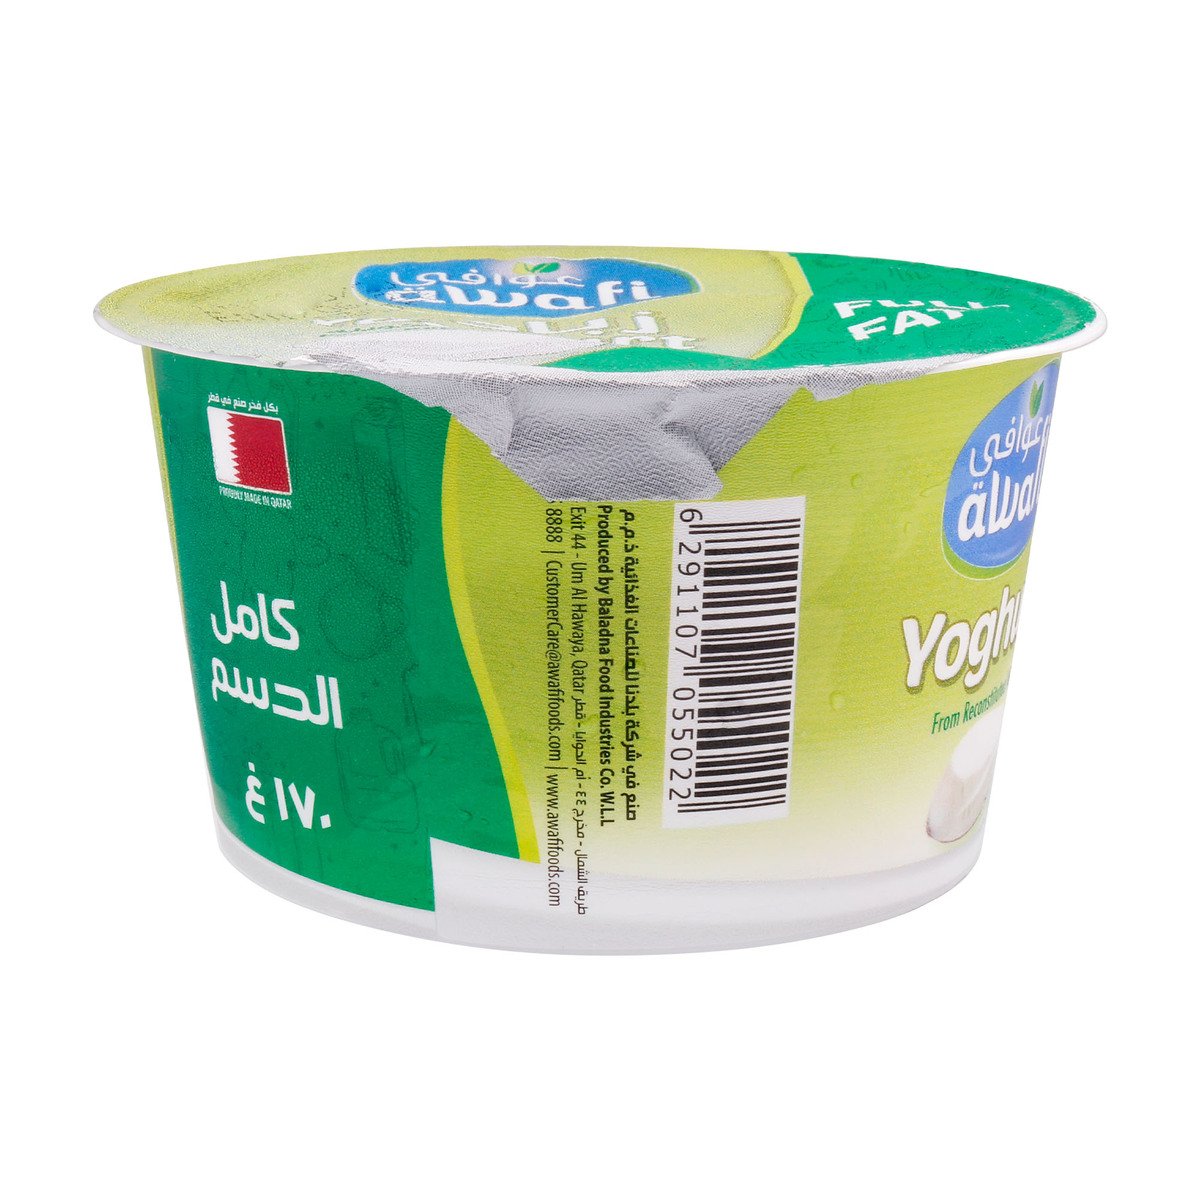 Awafi Plain Yoghurt Full Fat 170g